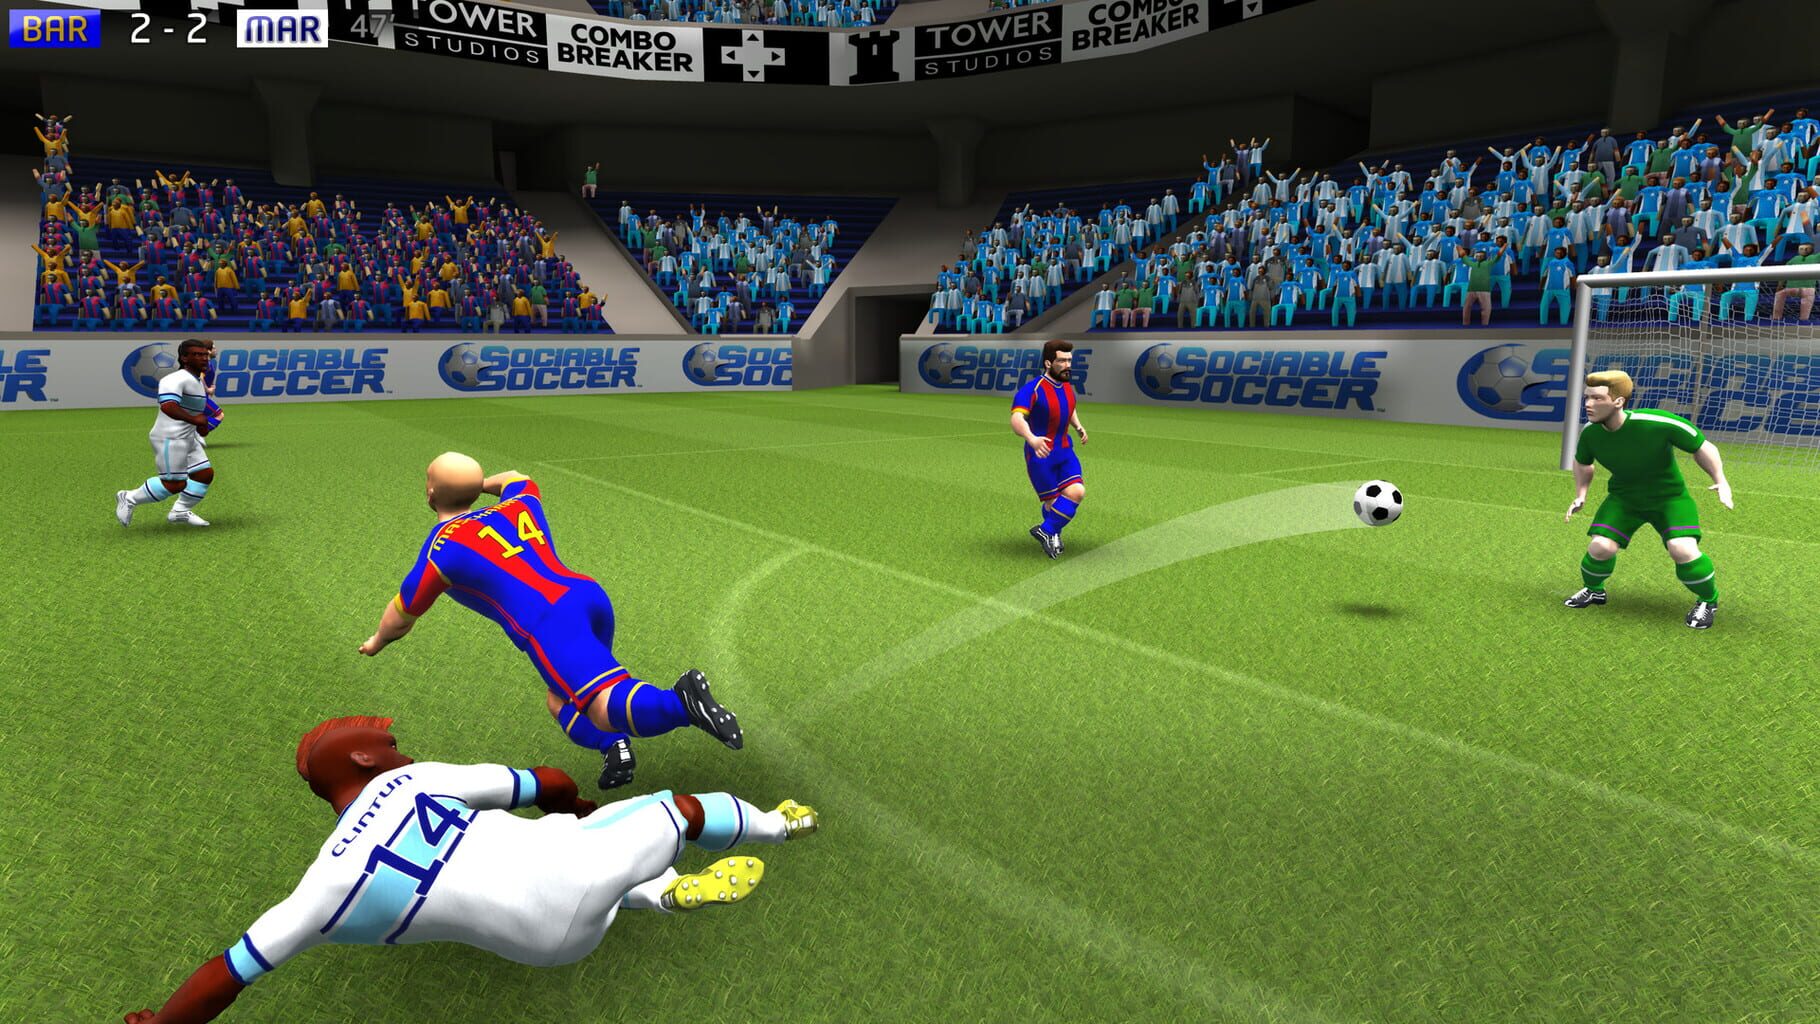 Sociable Soccer™ screenshots